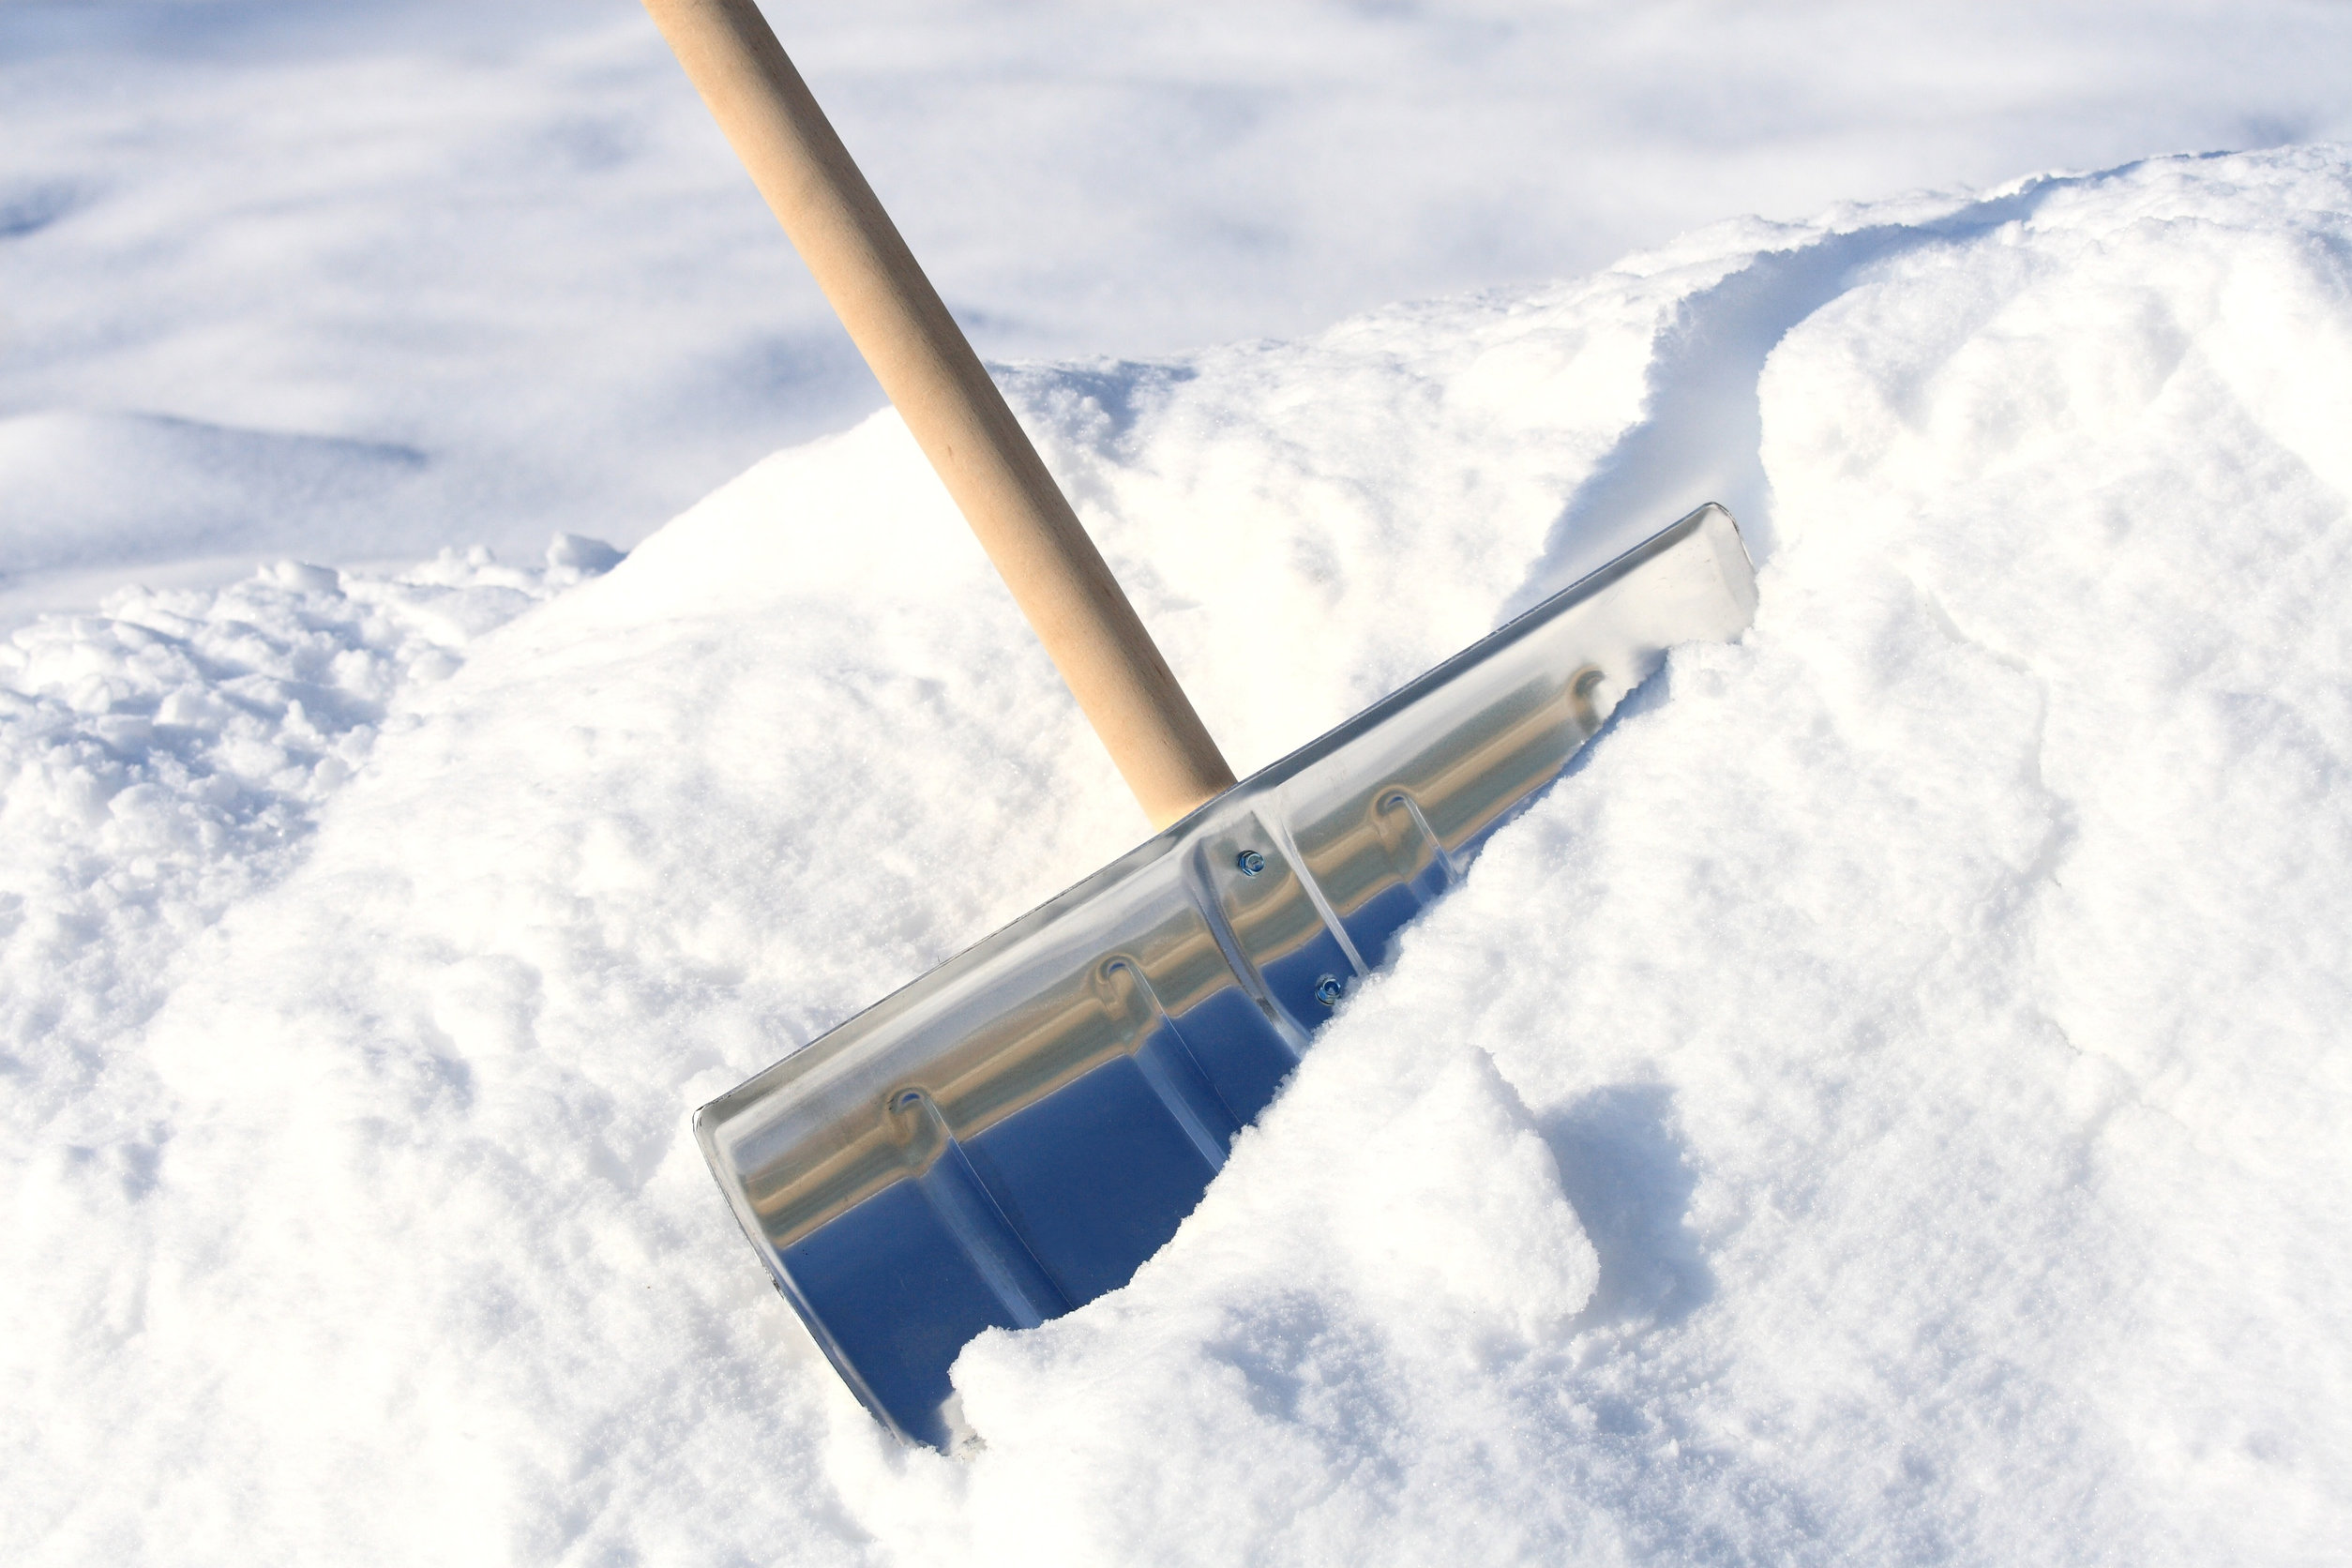 Przygotowani na zimę – o narzędziach, którą ułatwią usuwanie śniegu